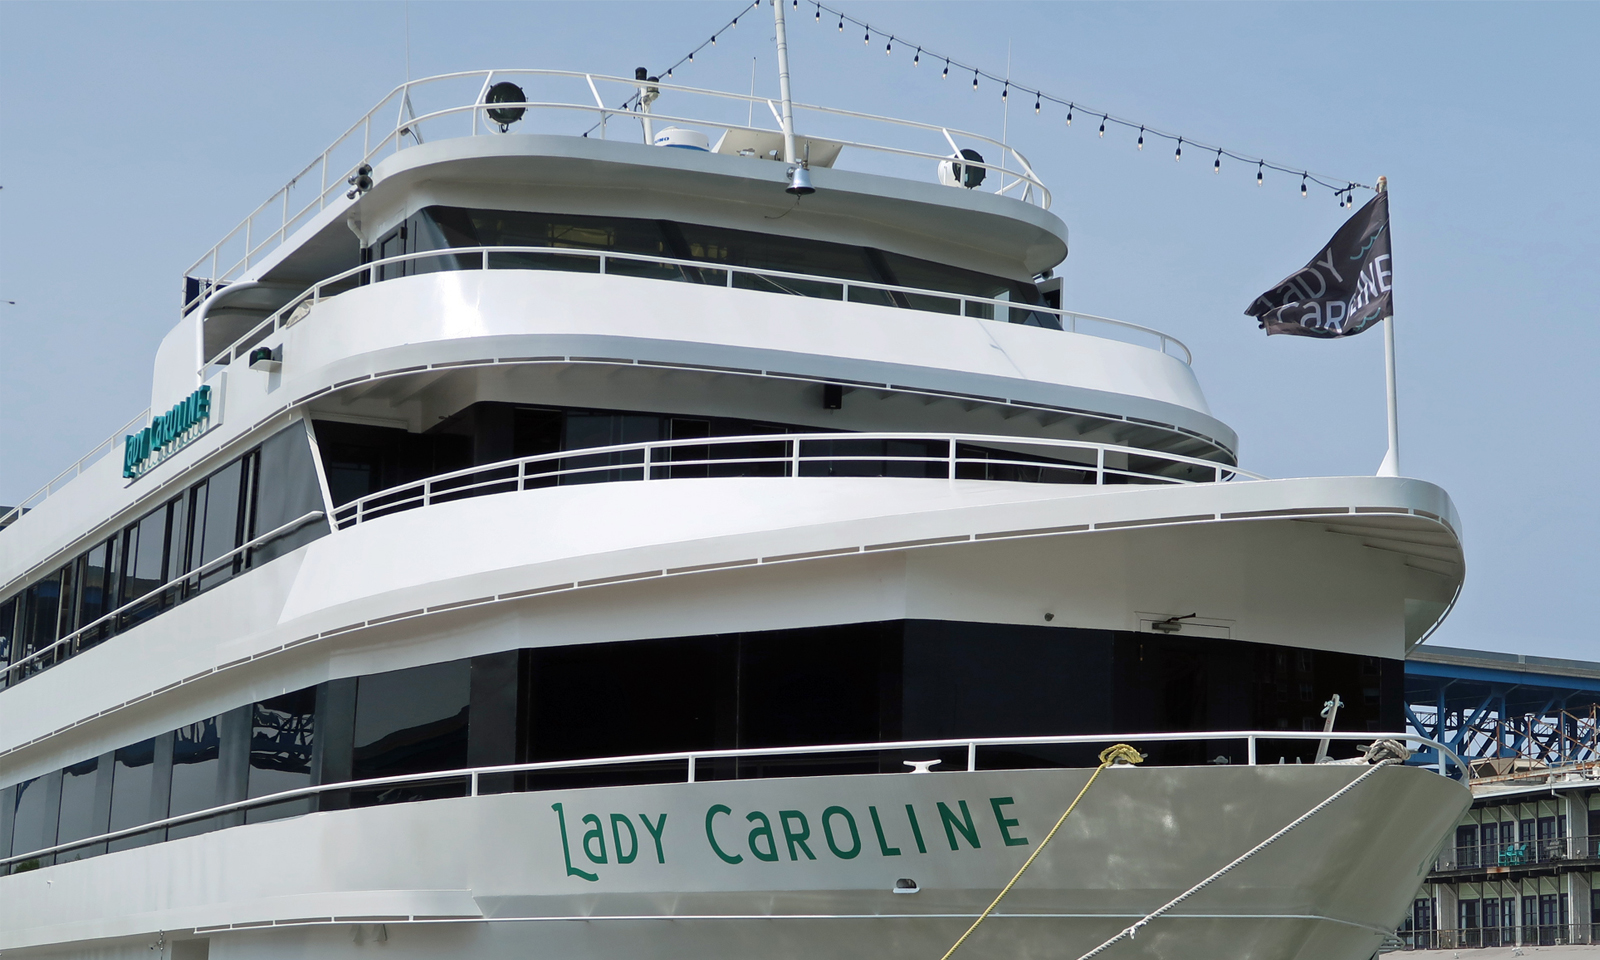 Lady Caroline dining cruise ship.